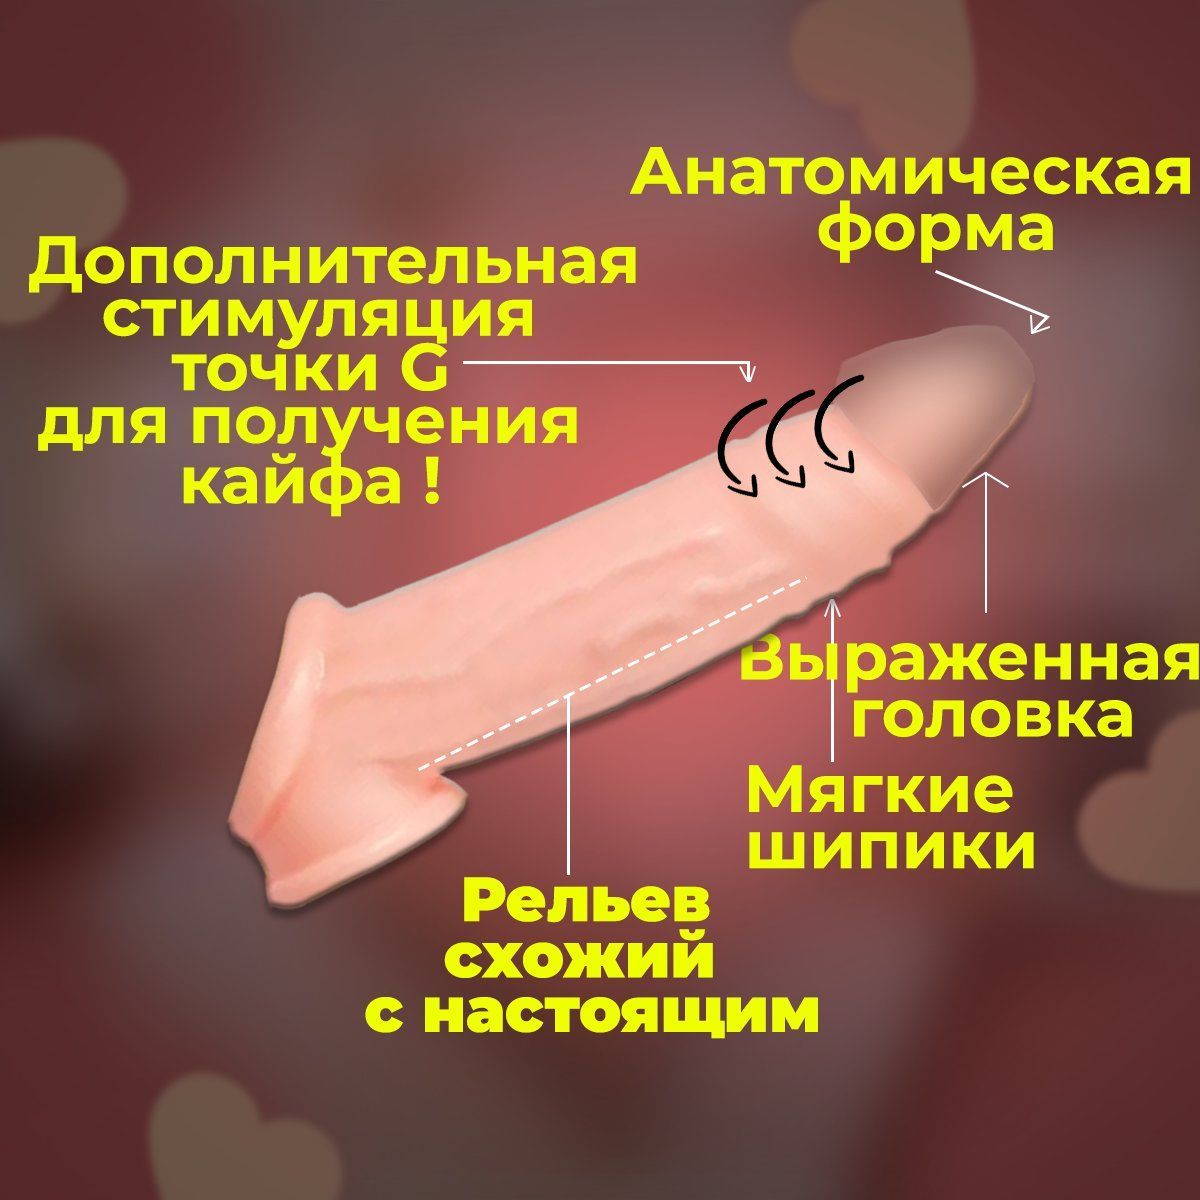 ❤️ Фото секс игрушки - интернет-магазин автонагаз55.рф